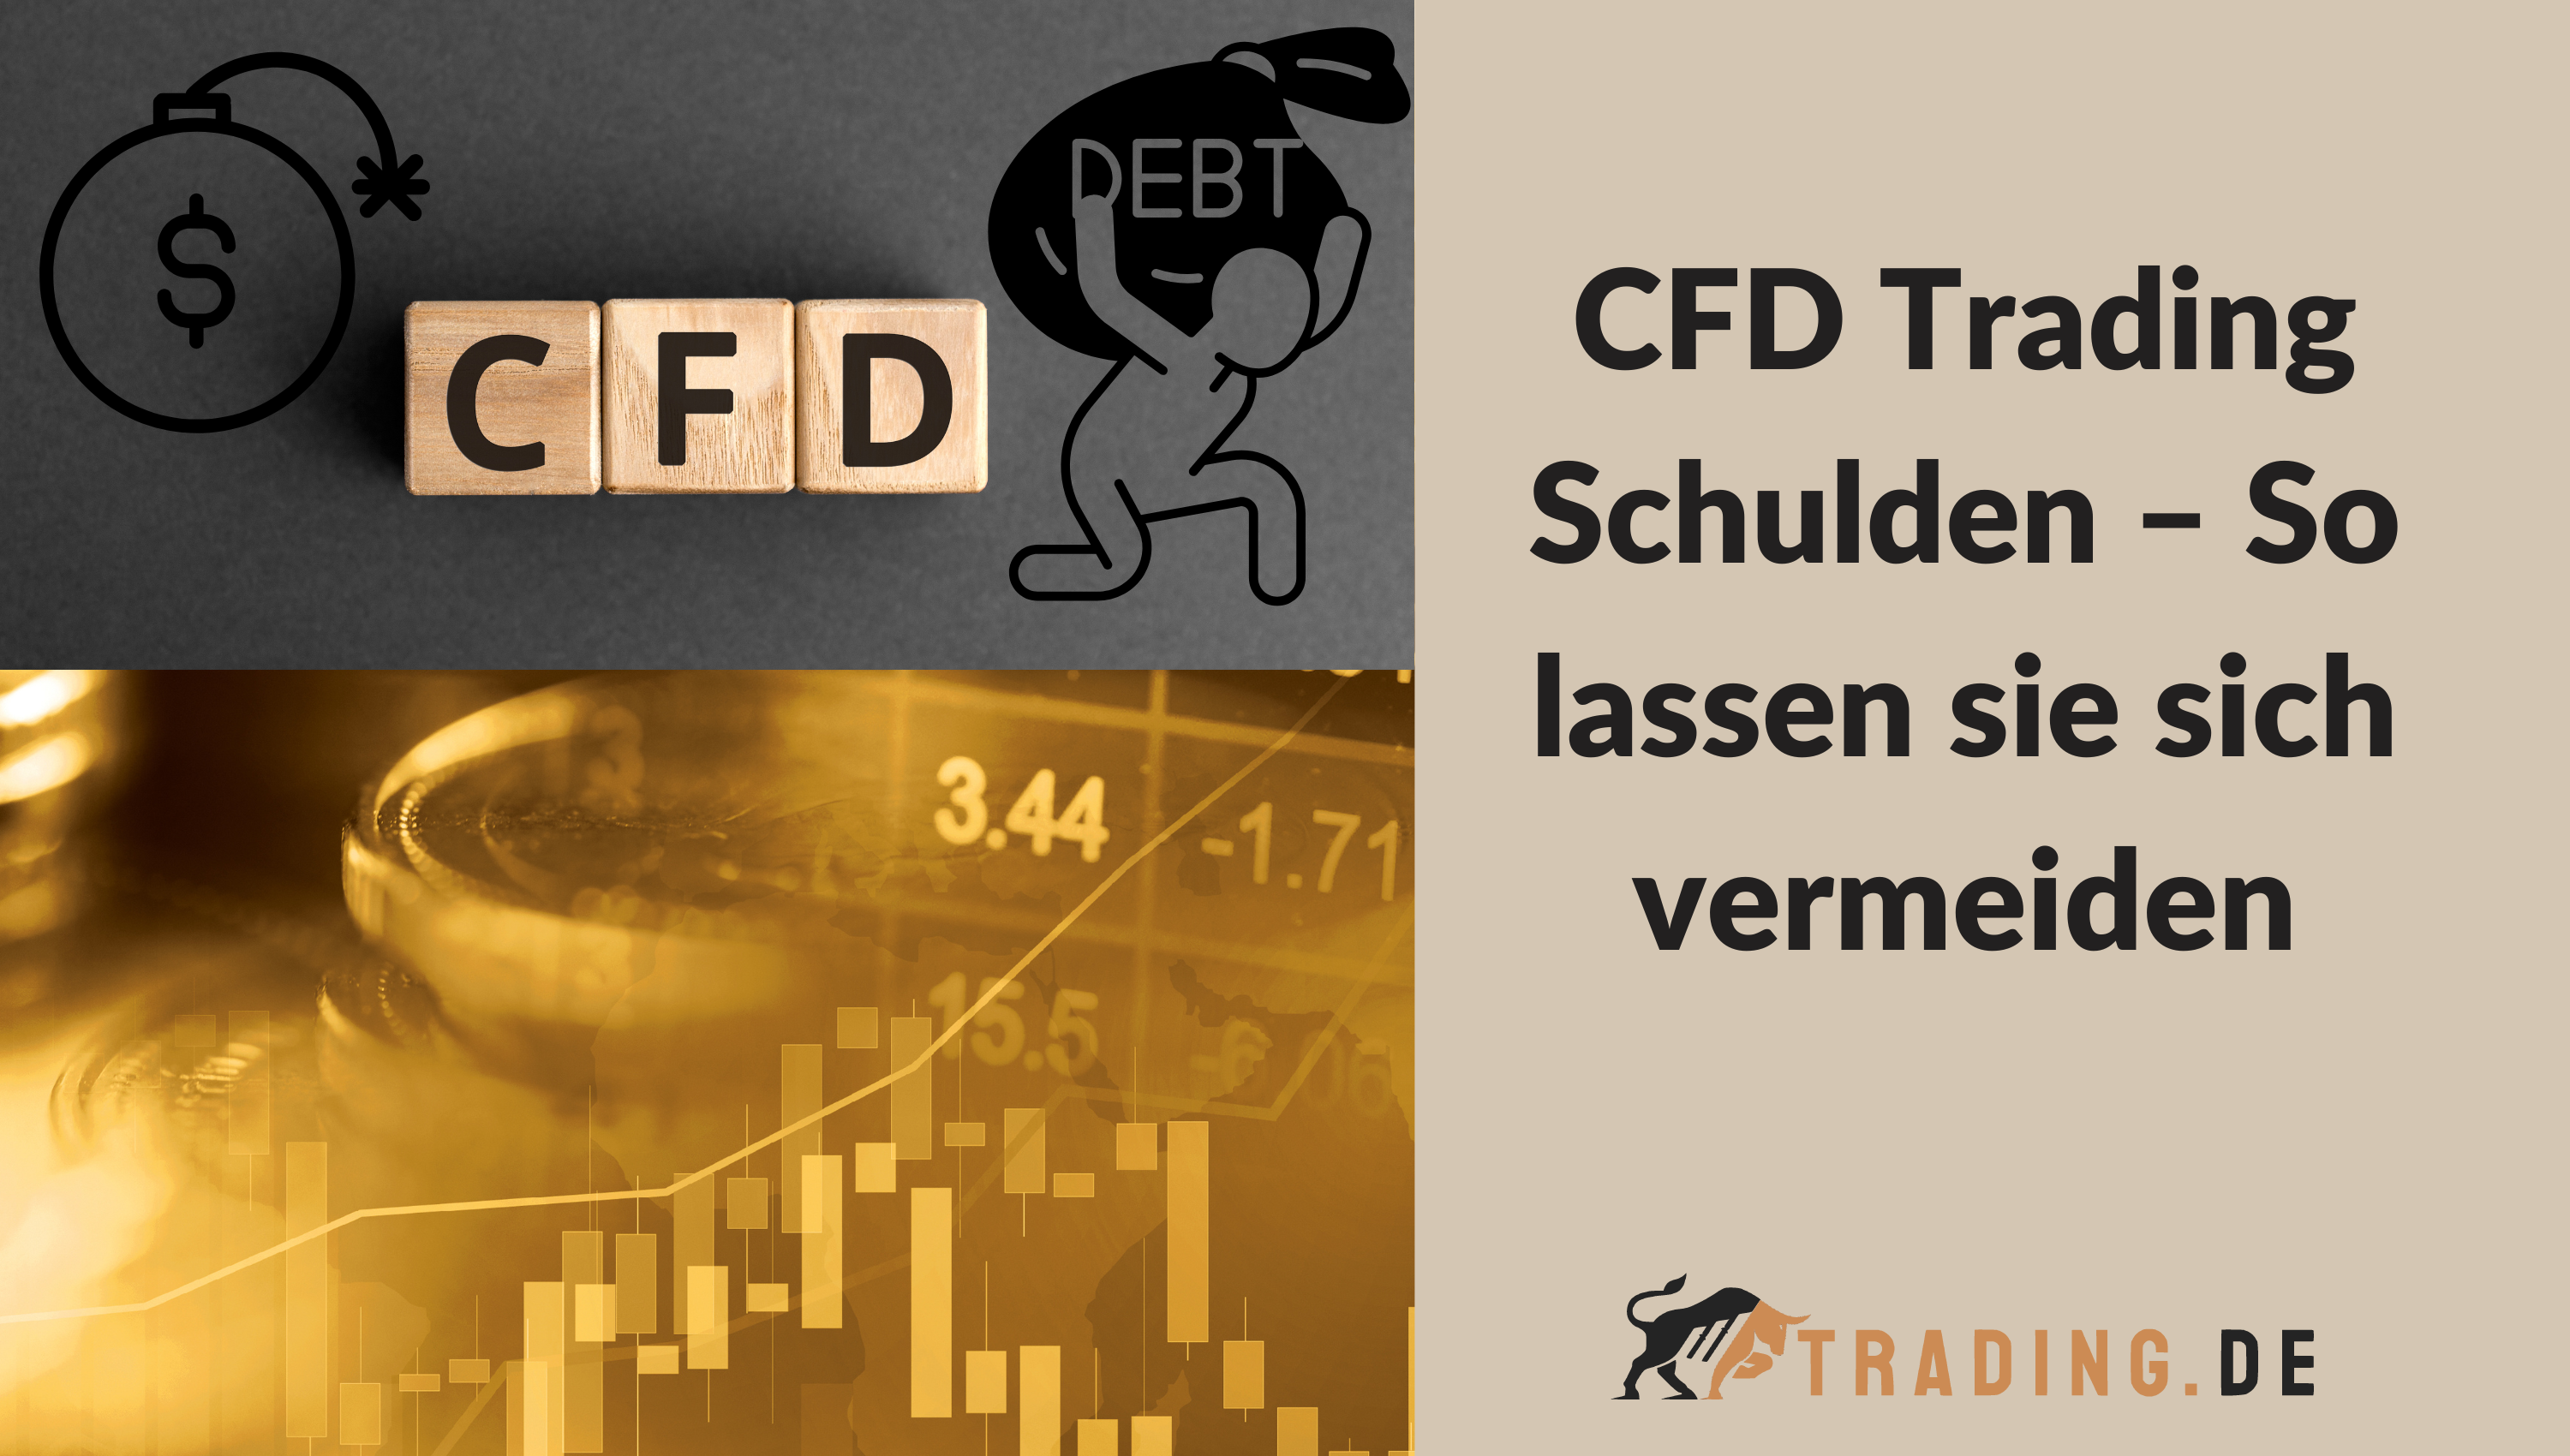 CFD Trading Schulden – So lassen sie sich vermeiden